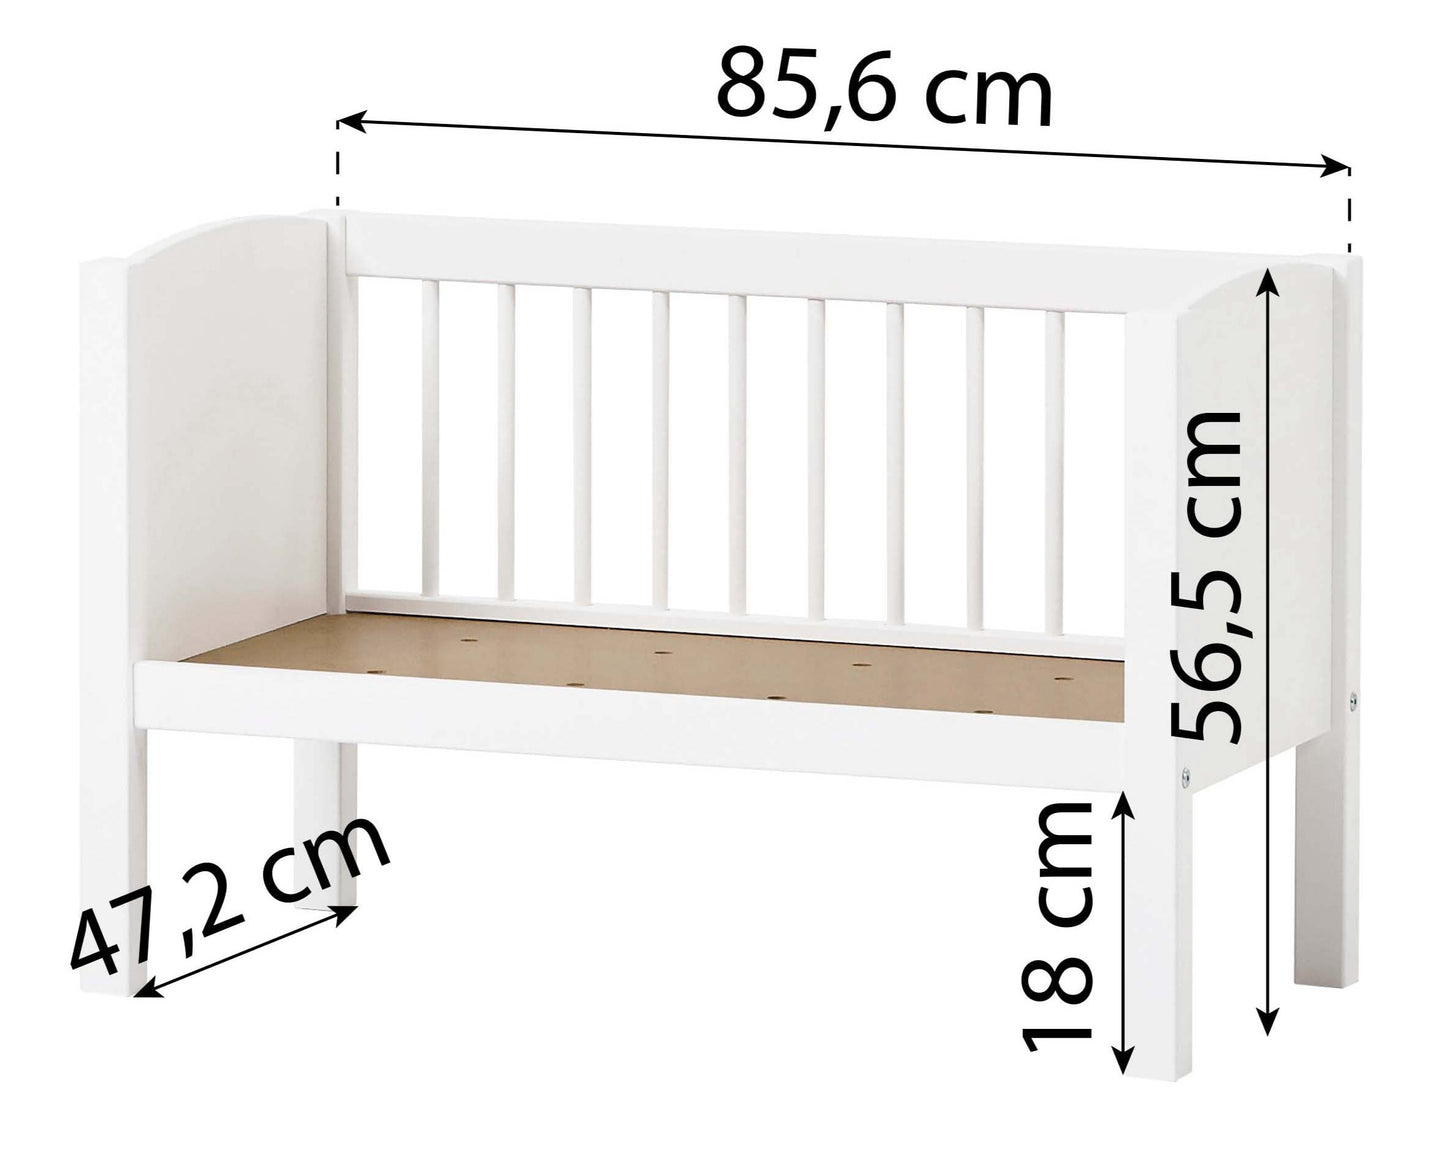 Cradle / Bench - 40x80cm  - white